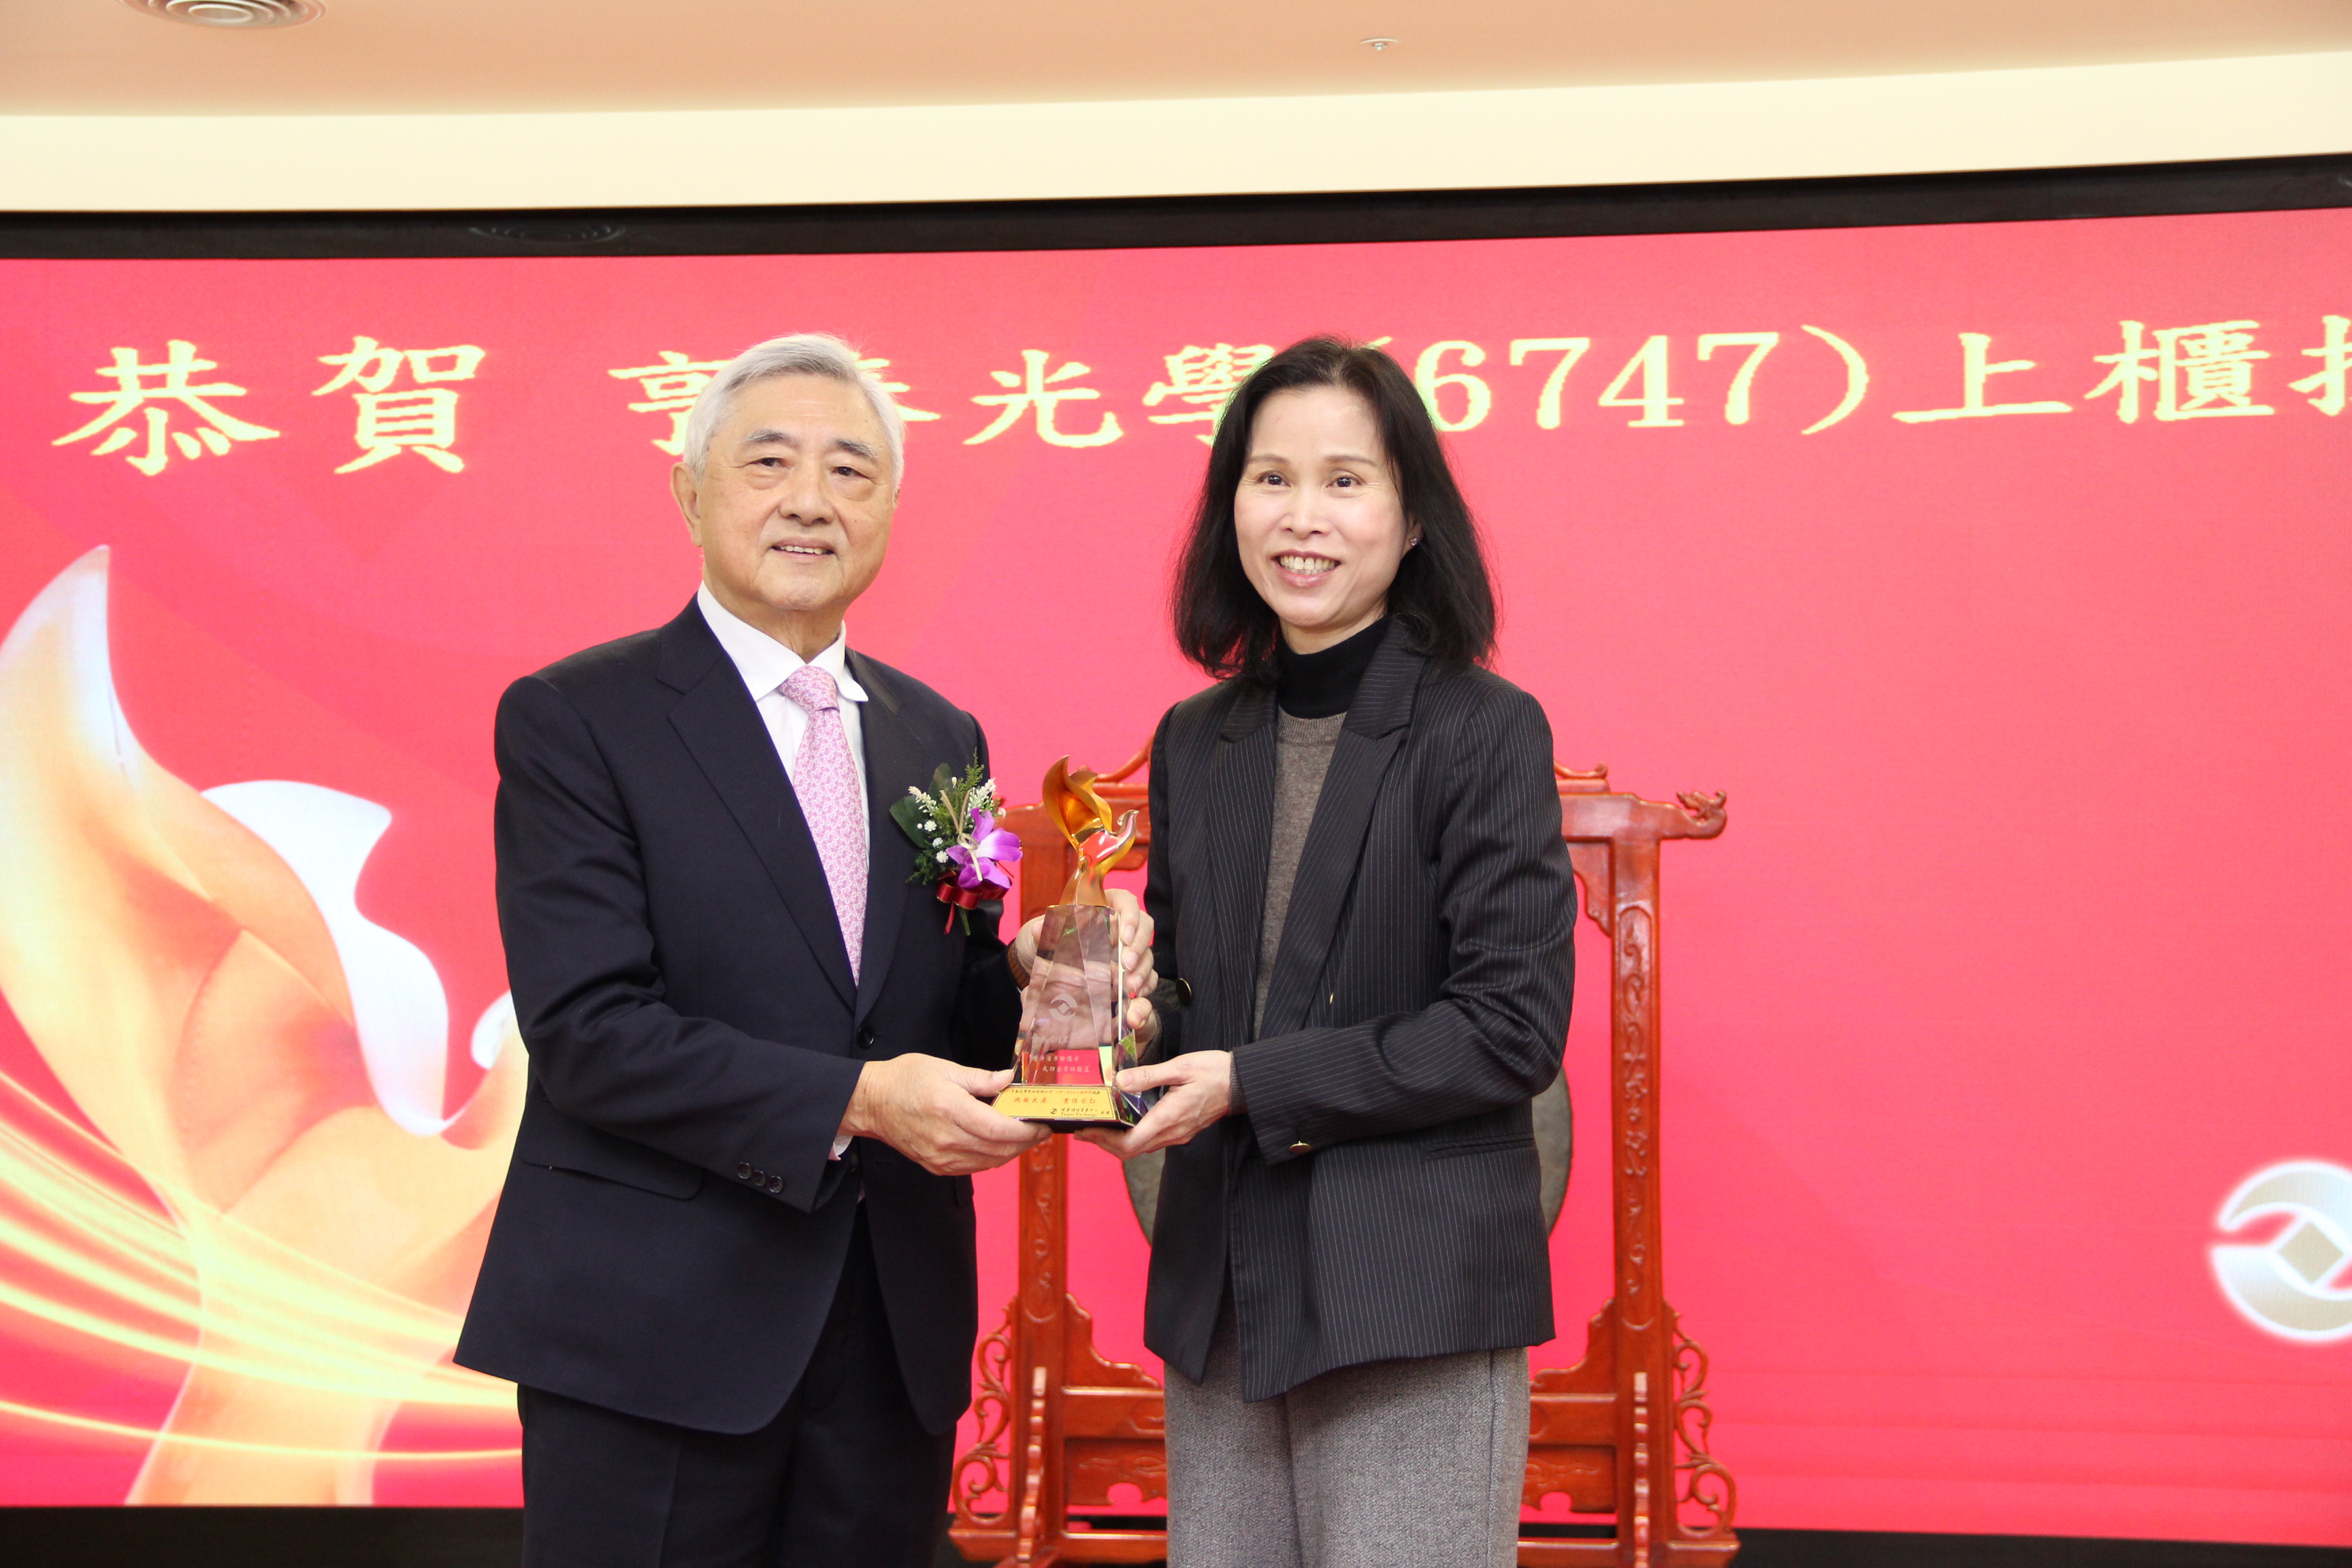 本中心李愛玲總經理(右)致贈紀念品予亨泰光公司吳泰雄董事長(左)，恭賀上櫃掛牌成功。
